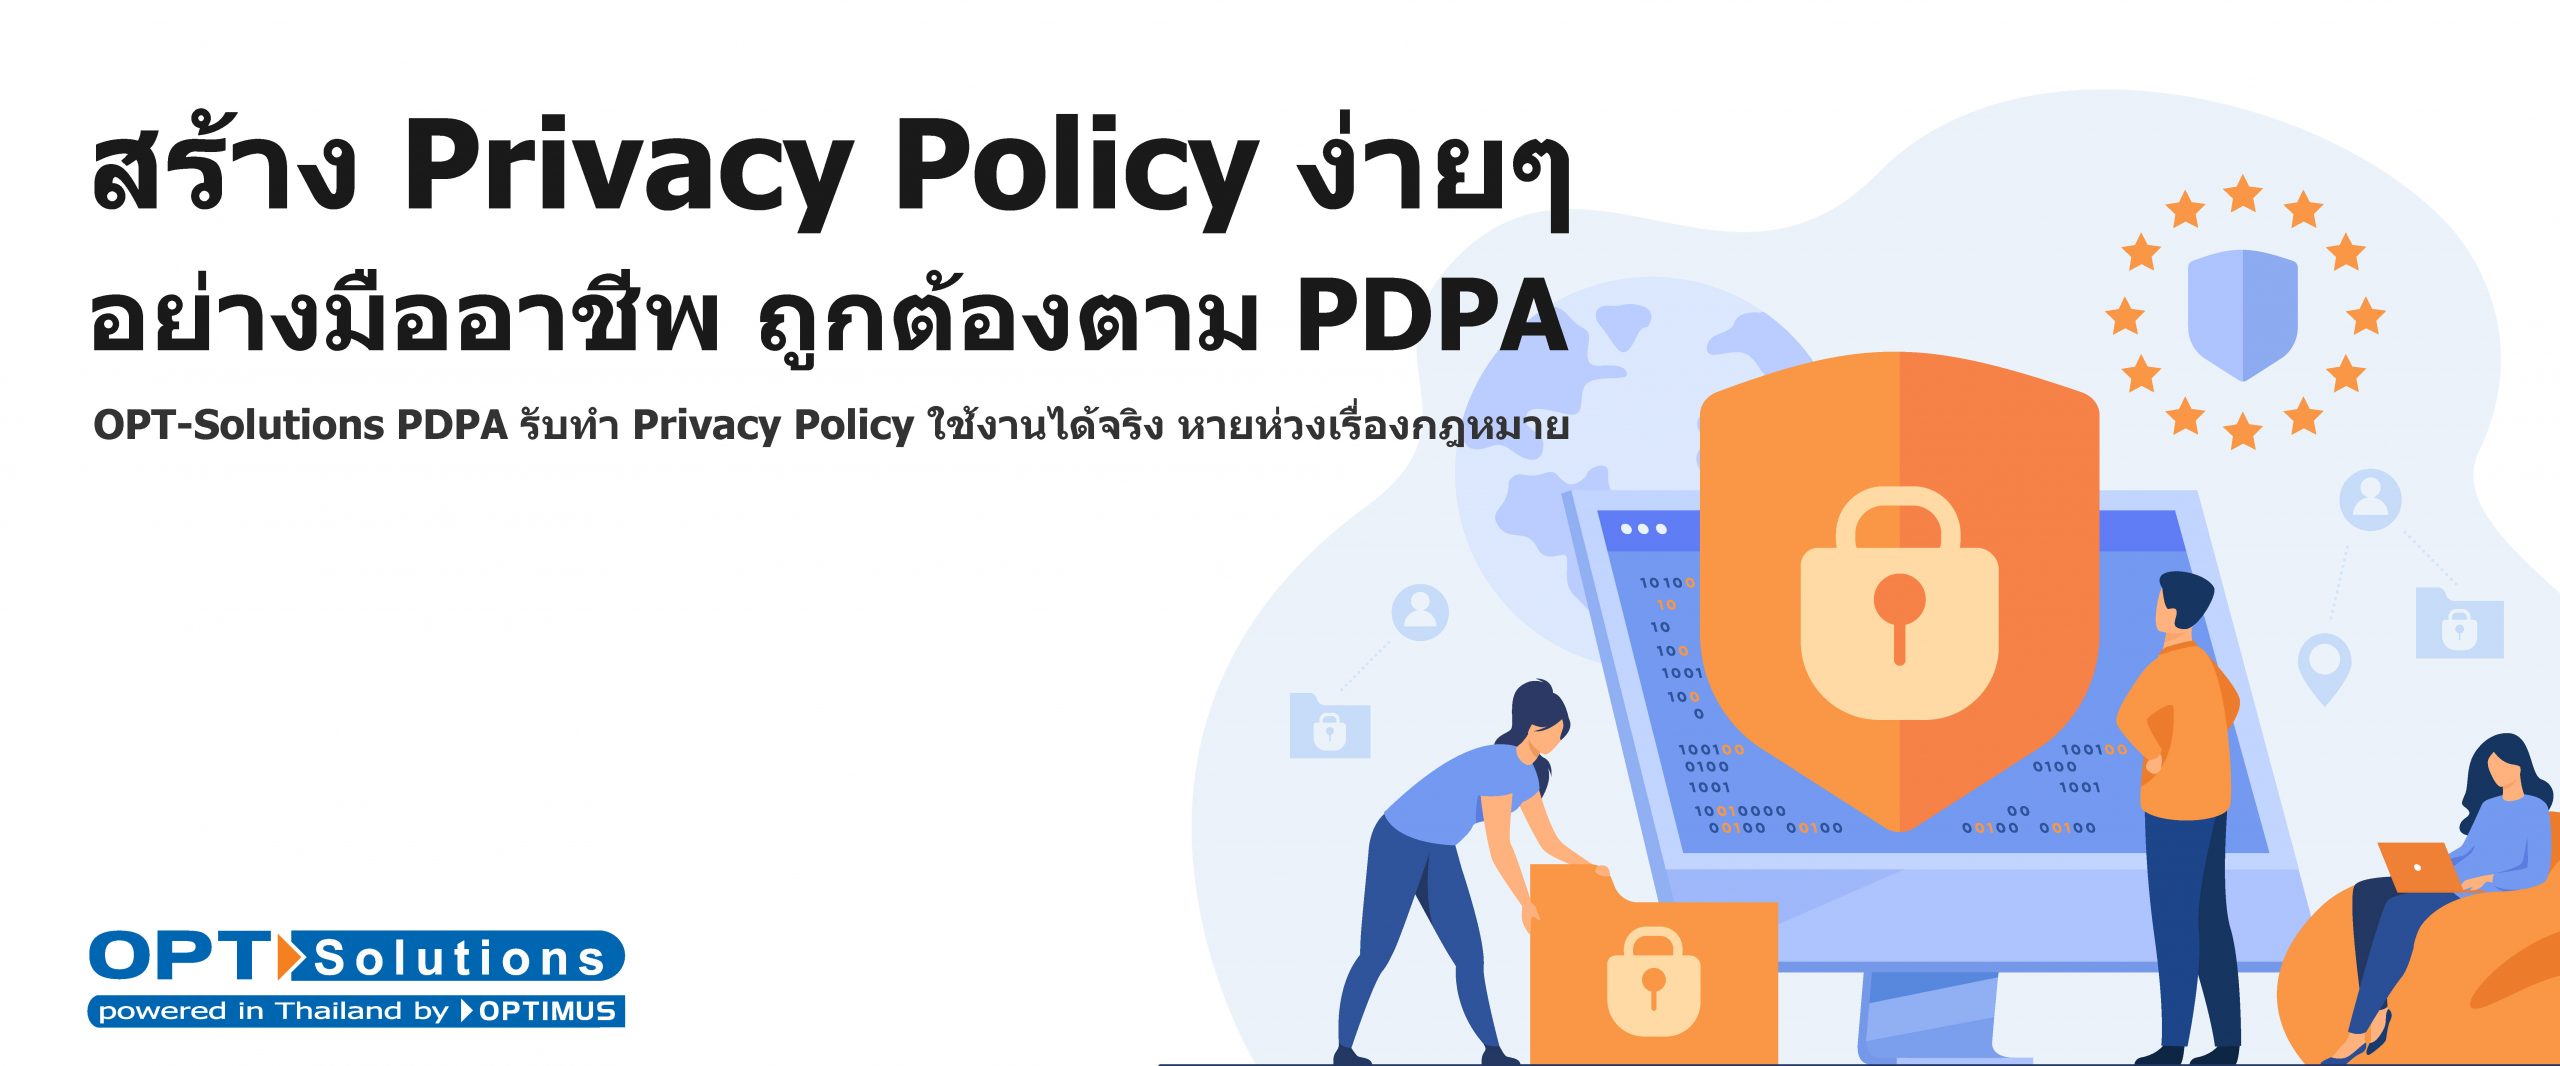 สร้าง Privacy Policy ง่ายๆ อย่างมืออาชีพ ถูกต้องตาม PDPA